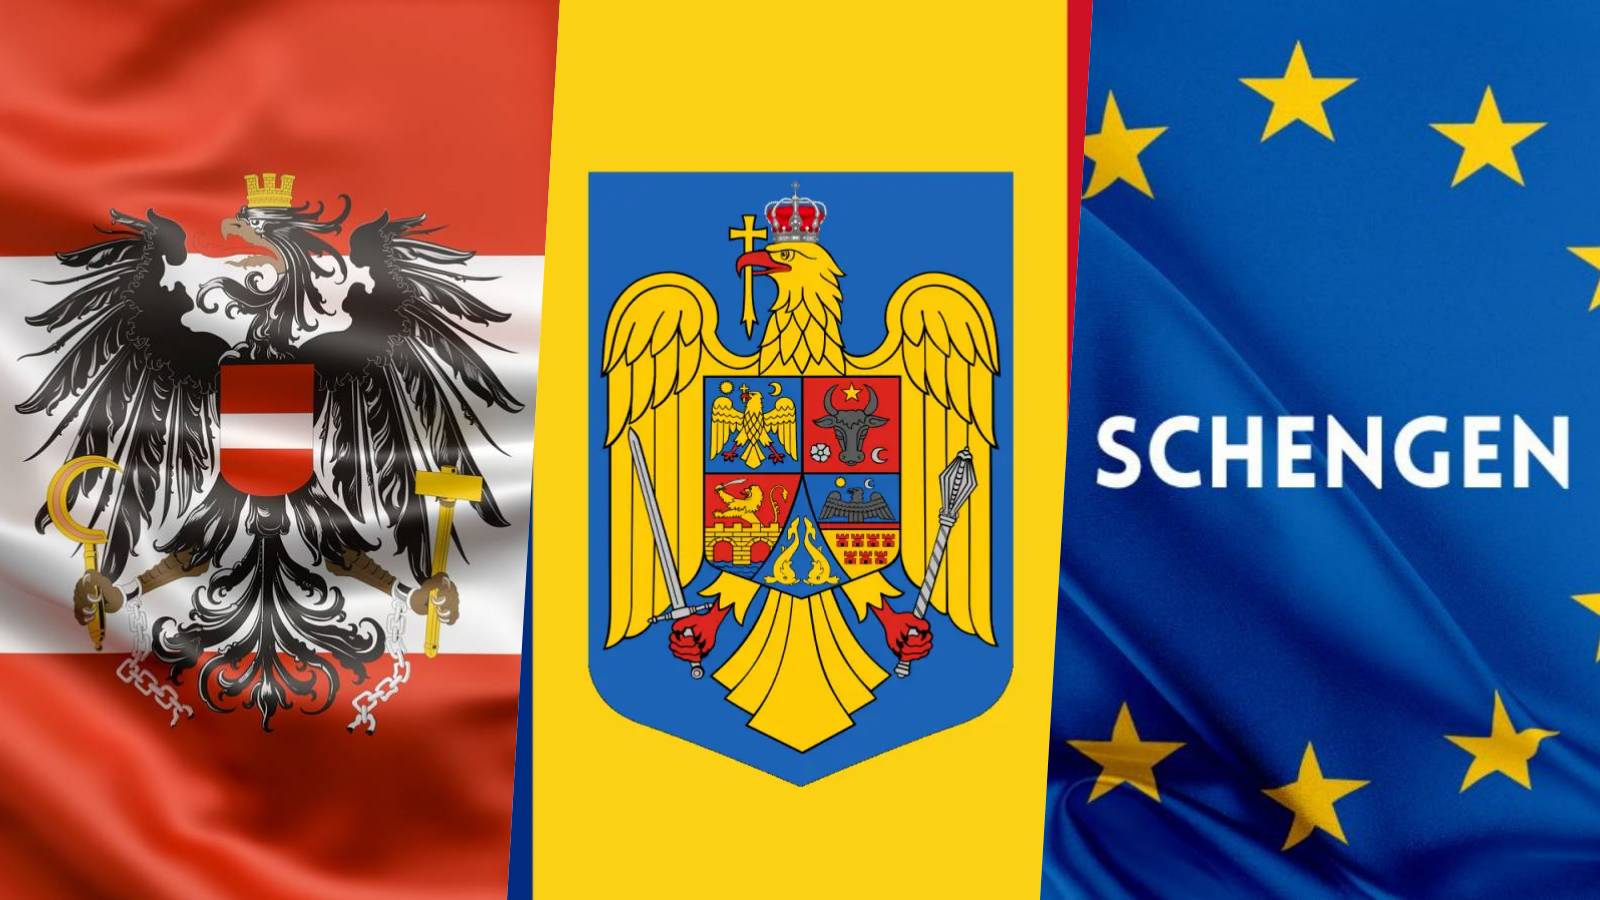 Karl Nehammer Anunturile ULTIM MOMENT Austriei Mentinerea RESTRICTIEI Aderarii Romaniei Schengen